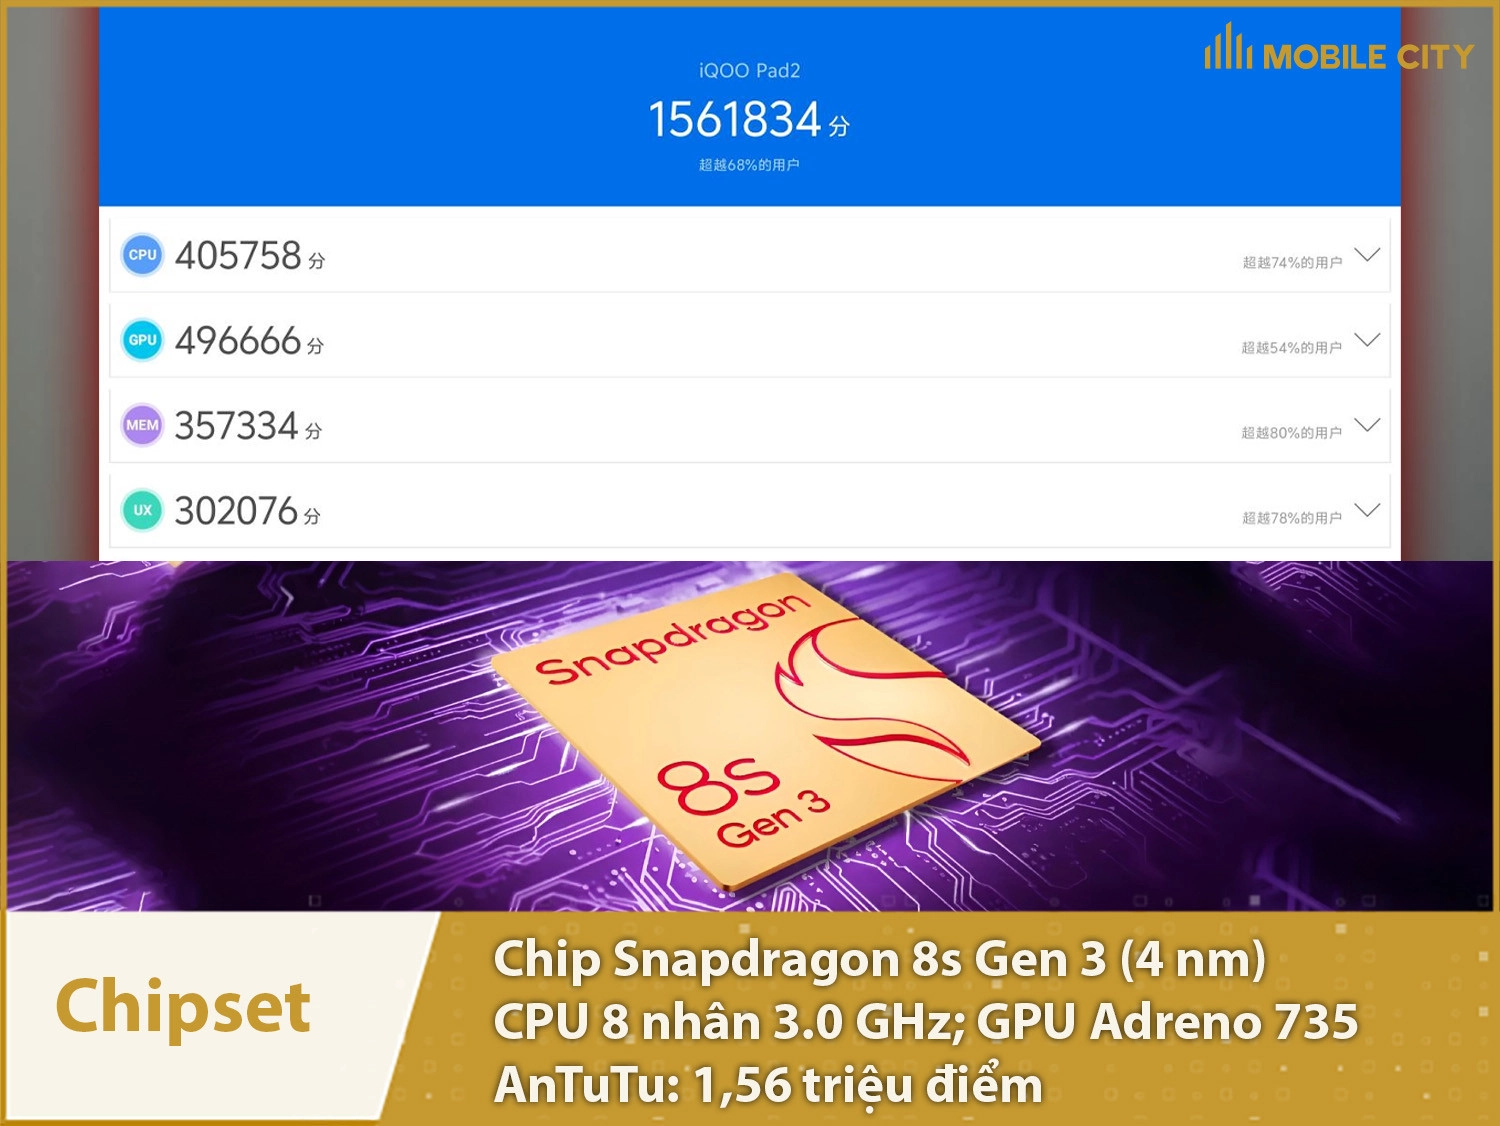 Chip Snapdragon 8s Gen 3 có hiệu năng vô cùng mạnh với hơn 1,65 triệu điểm AnTuTu